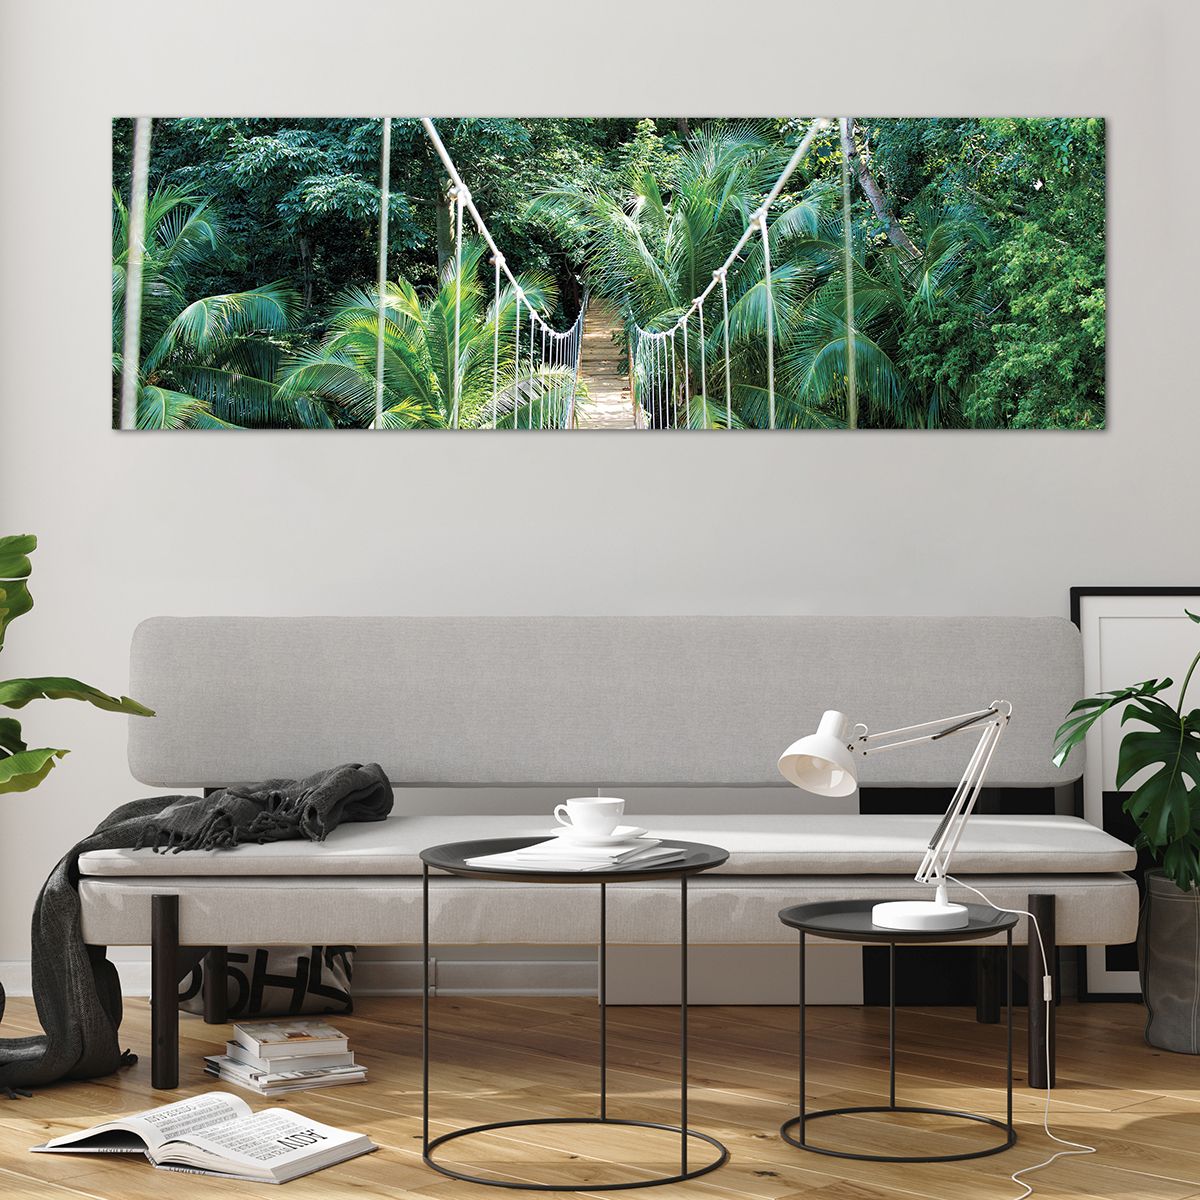 Bilder auf glas Landschaft, Bilder auf glas Urwald, Bilder auf glas Honduras, Bilder auf glas Hängende Brücke, Bilder auf glas Natur